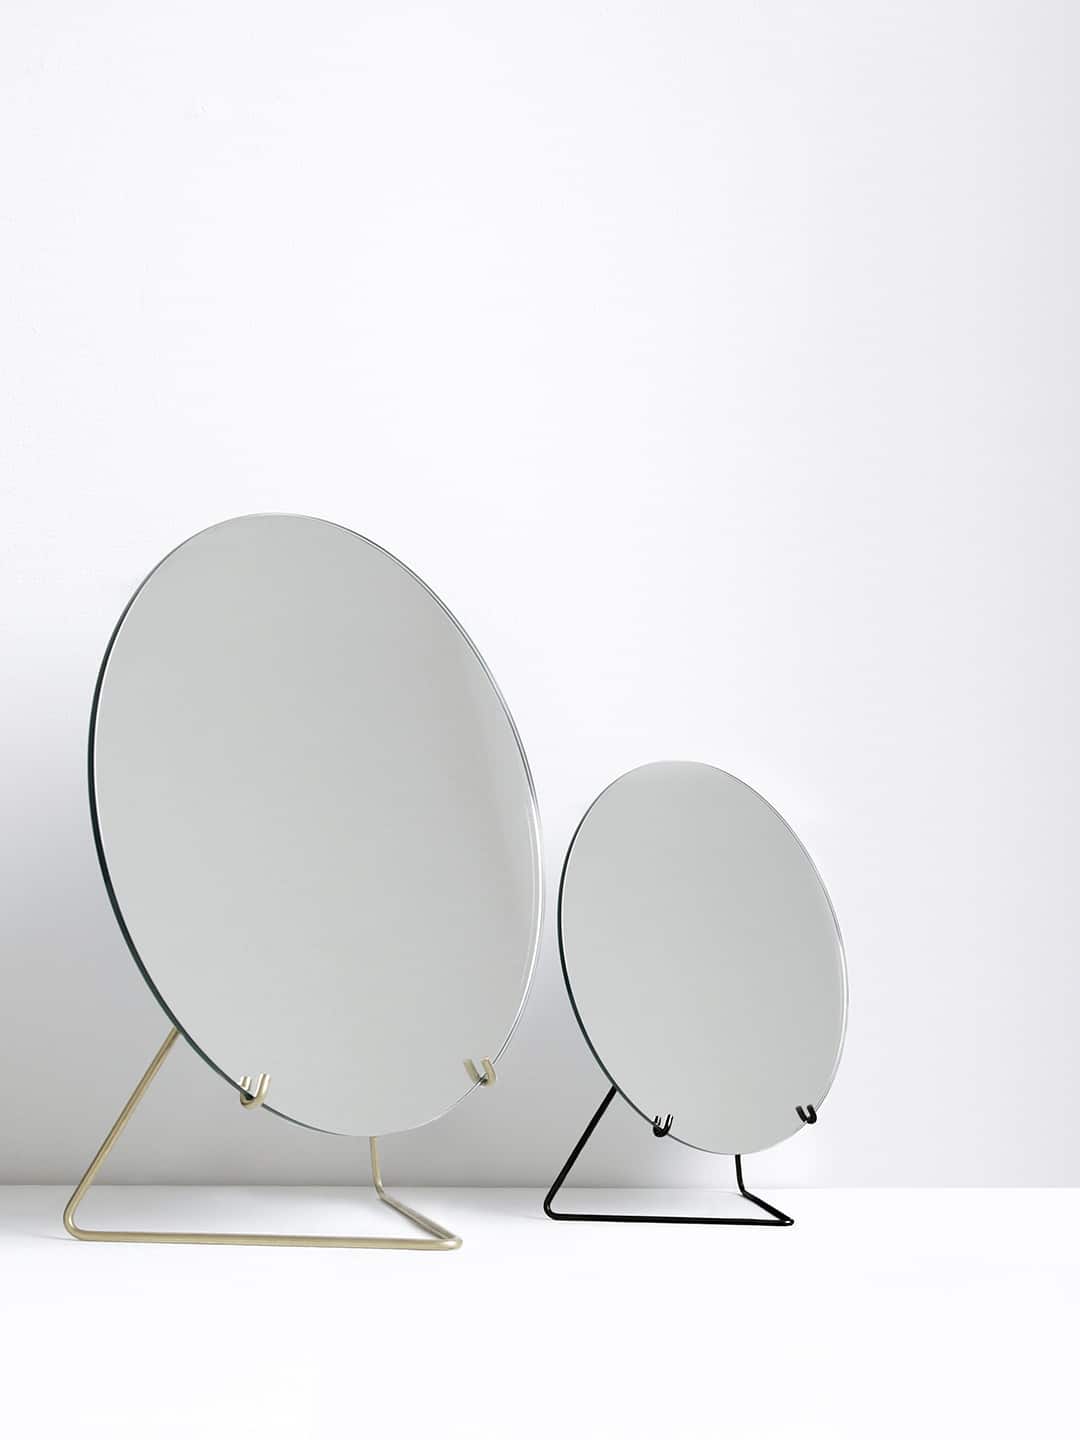 Настольные зеркала от скандинавских дизайнеров Moebe Standing